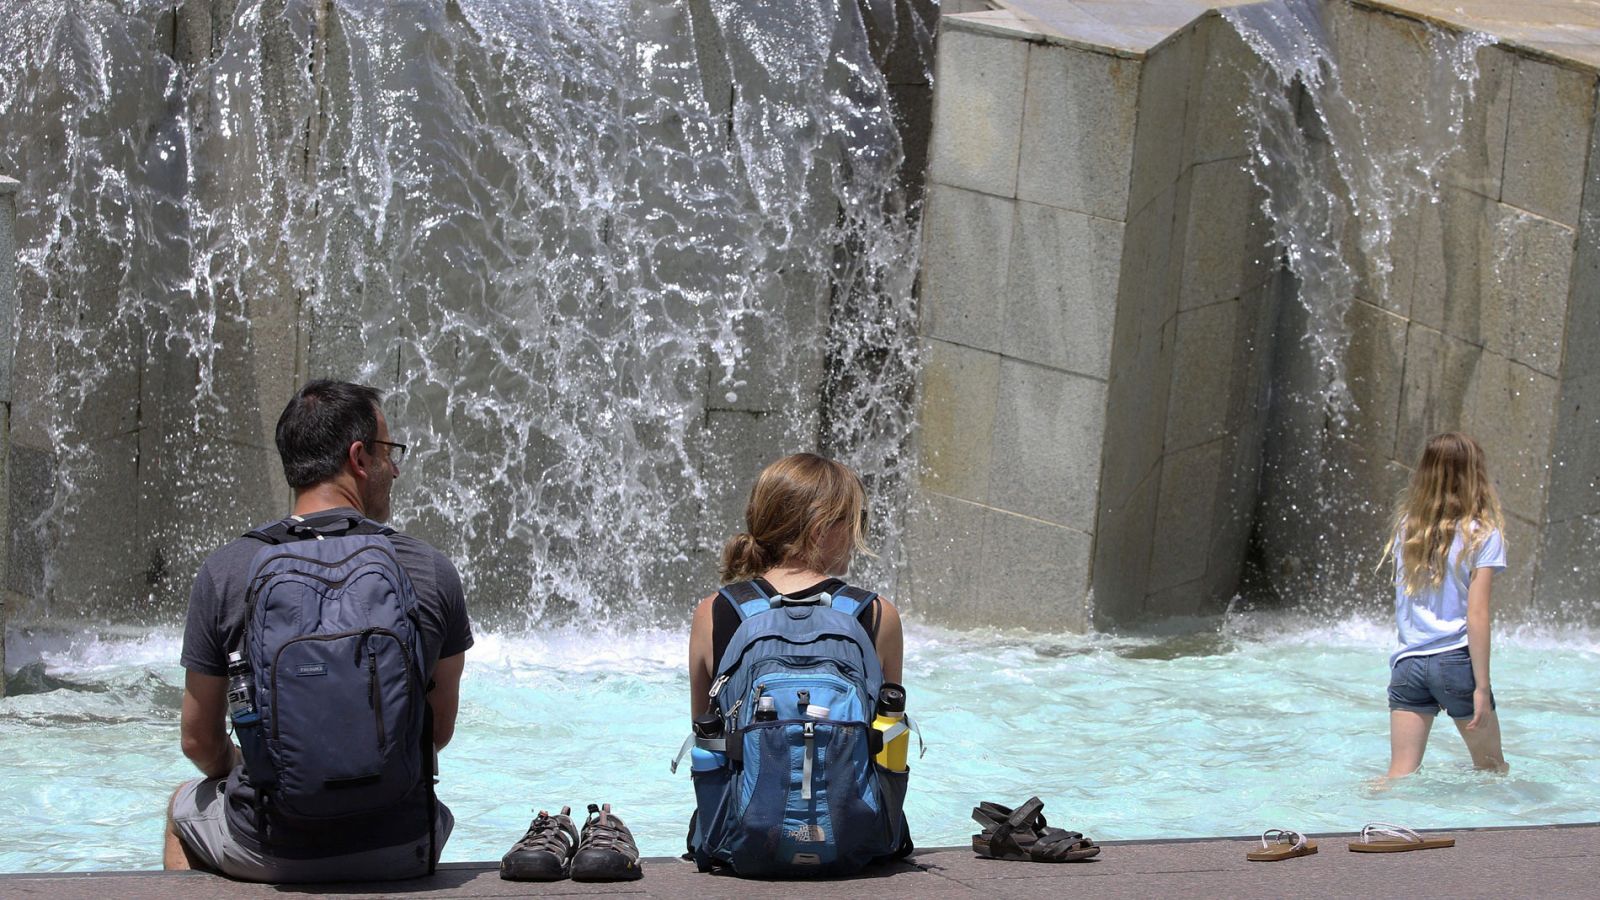 Una familia norteamericana se refresca en una de las fuentes de la Plaza del Pilar de Zaragoza